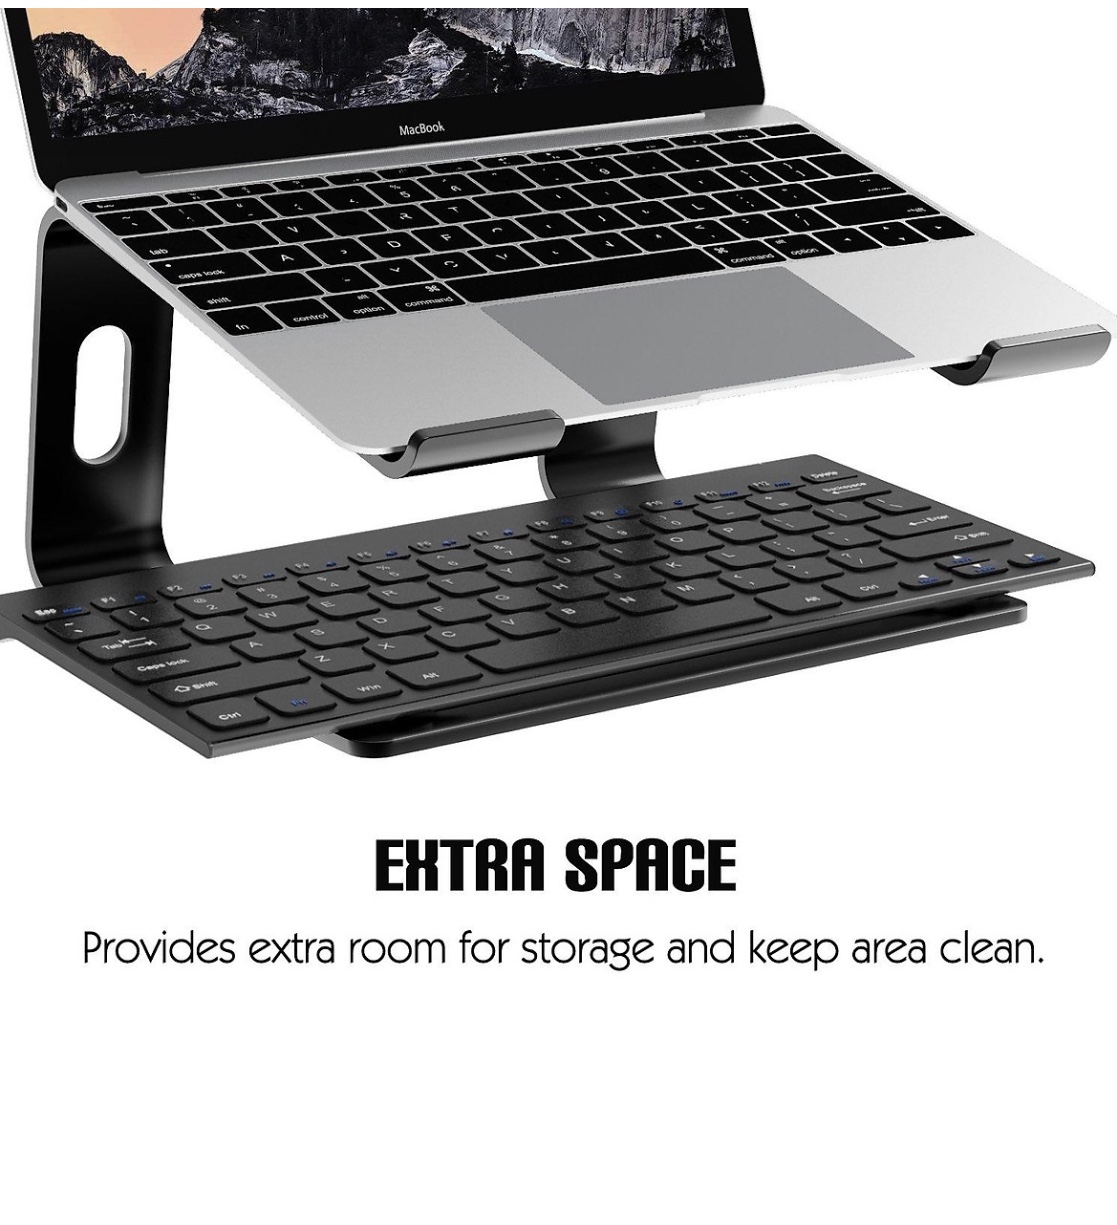 Giá đỡ laptop stand nhôm cho máy tính xách tay